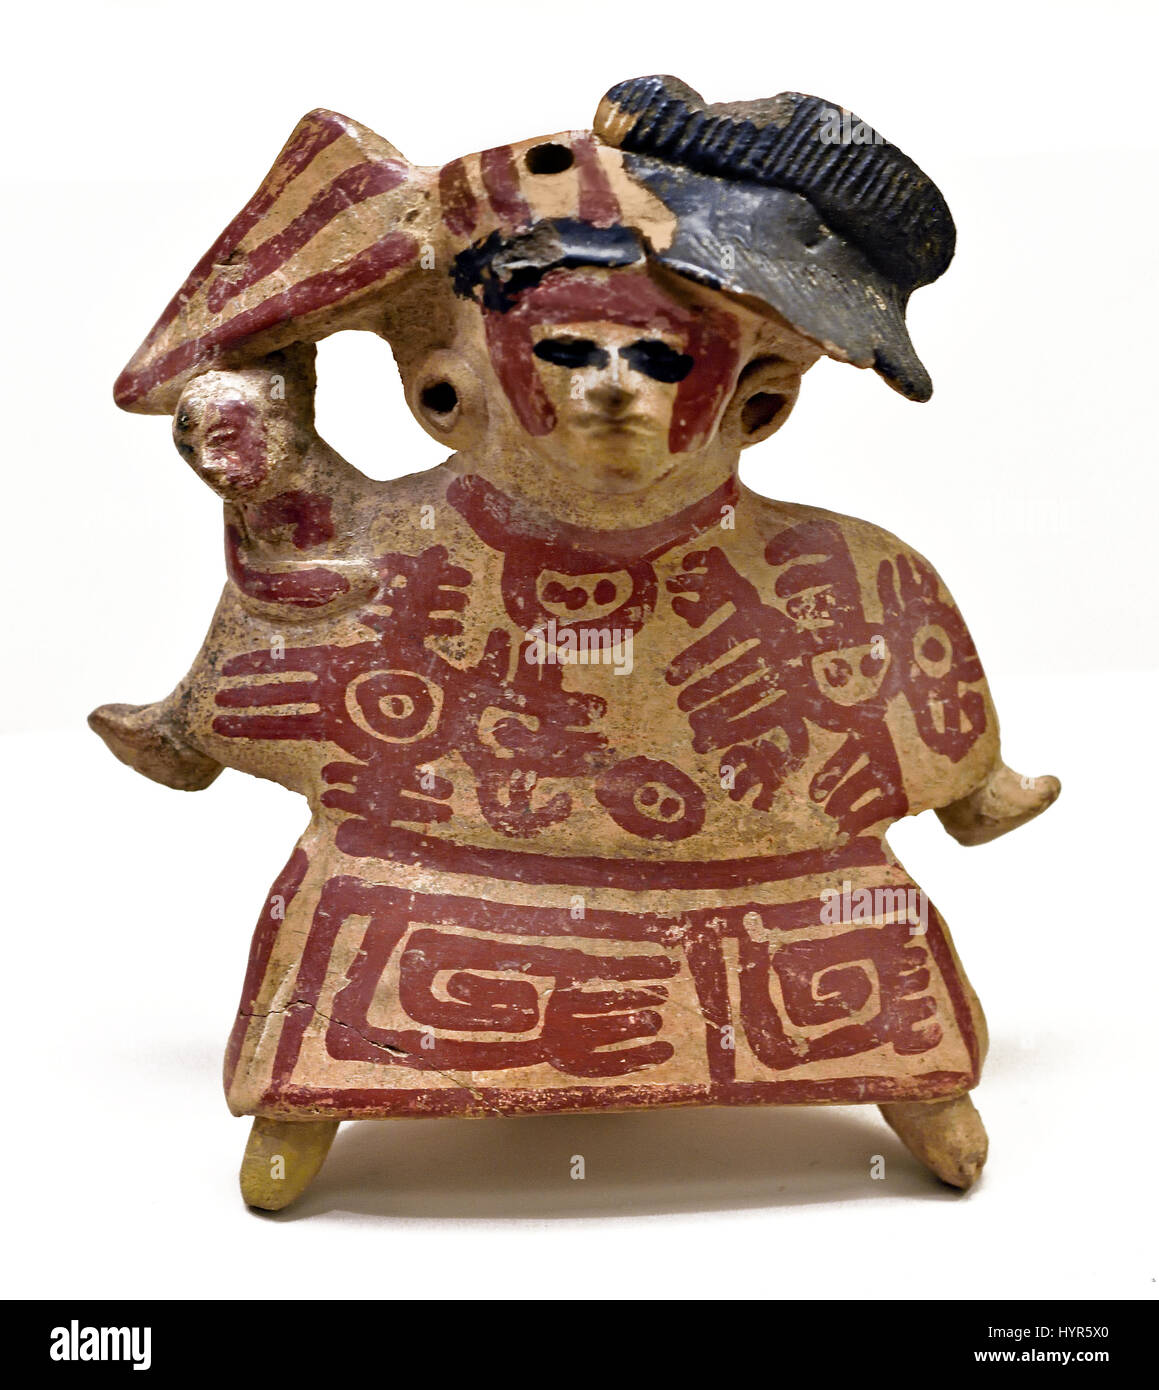 Keramik-Pfeife einer Frau ein Kind klassische Veracruz, 300-1200 n. Chr. (The Maya - Maya-Zivilisation war eine Mesoamerican Zivilisation in Yucatán Mexiko und Belize in Mittelamerika (2600 v. Chr. - 1500 n. Chr.) Pre Columbian American) Stockfoto